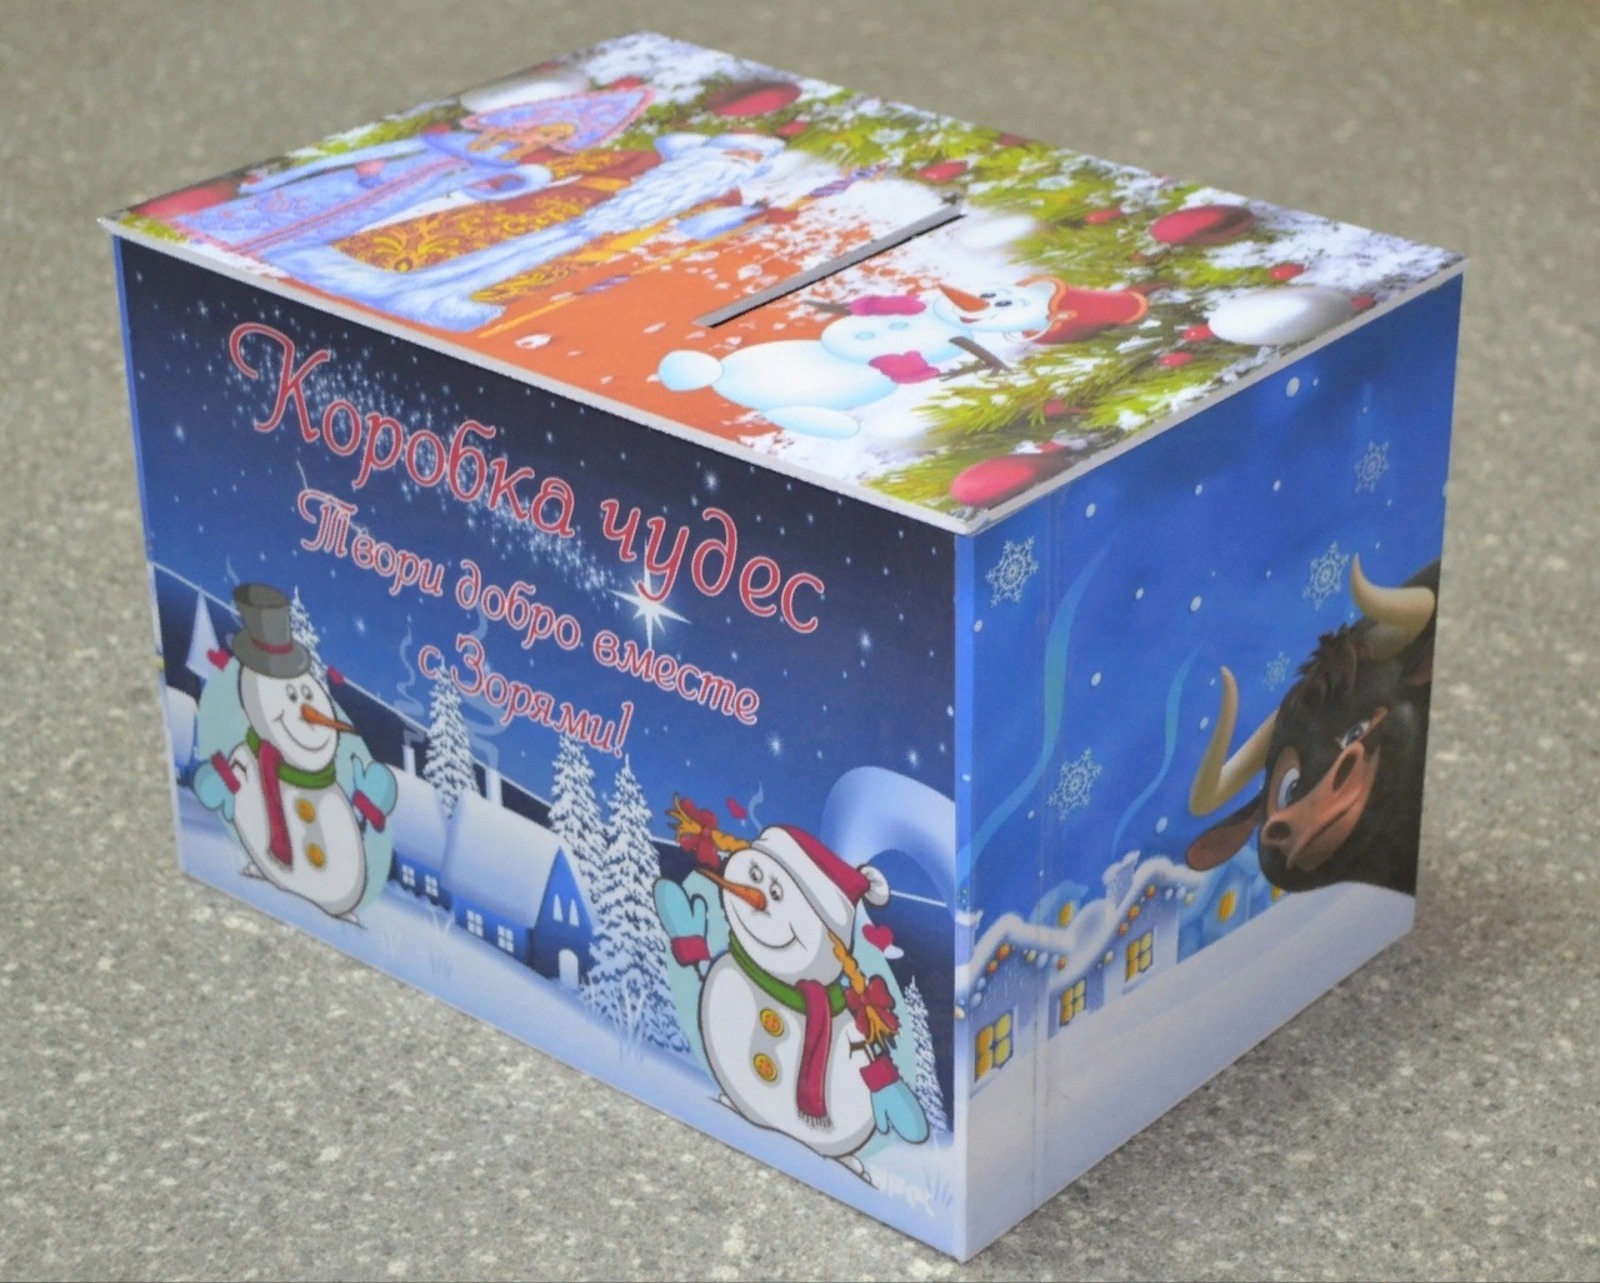 В редакции одной из районных газет Башкирии установлена "Коробка чудес"!